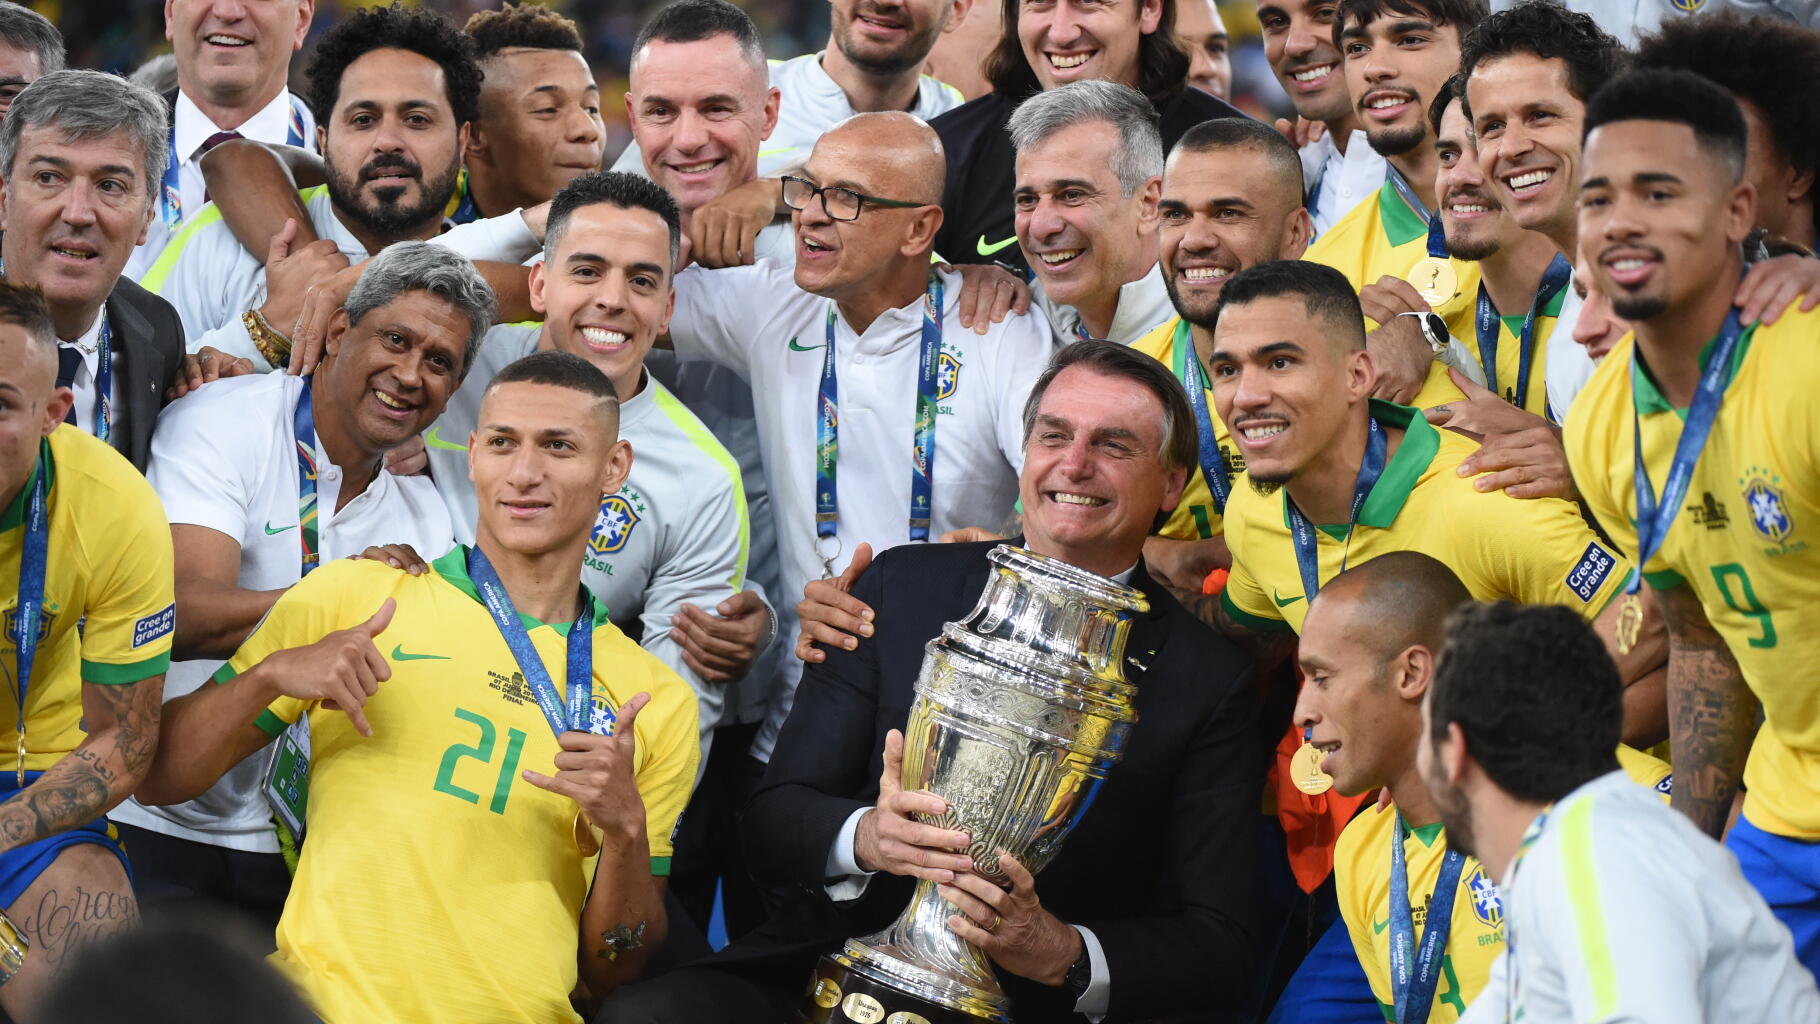 Pourquoi Neymar et beaucoup de stars du foot soutiennent Bolsonaro au Brésil